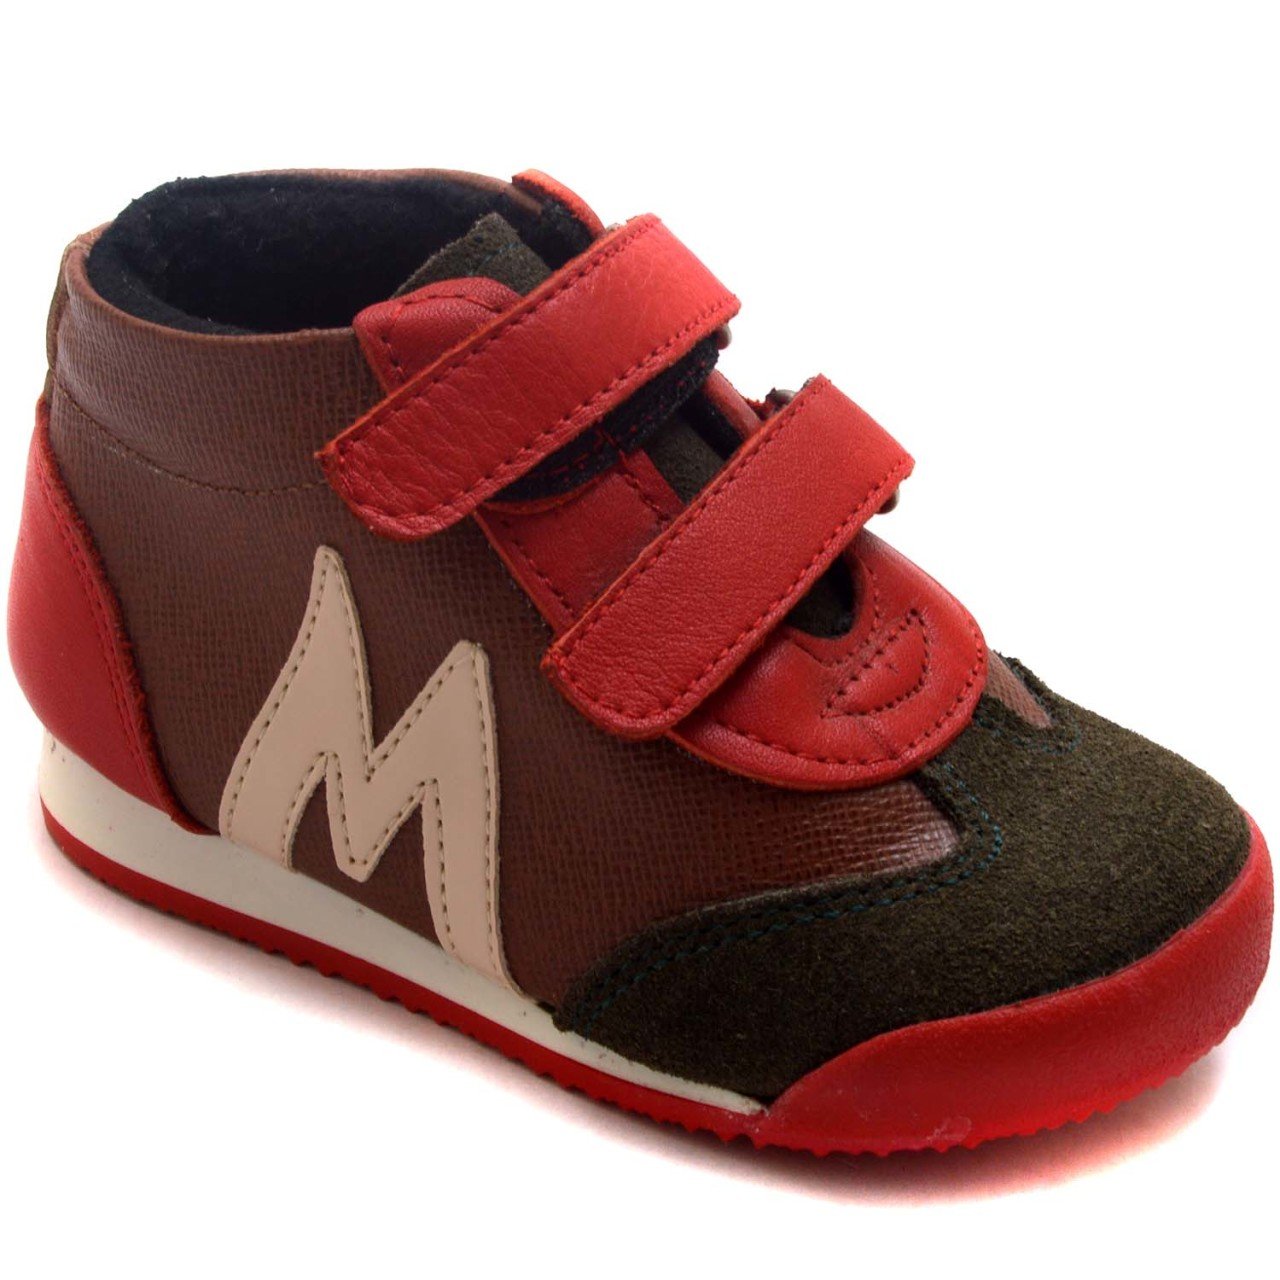 NM-23 Bebe Spor Model Kışlık Ayakkabı - Kahverengi (Deri)